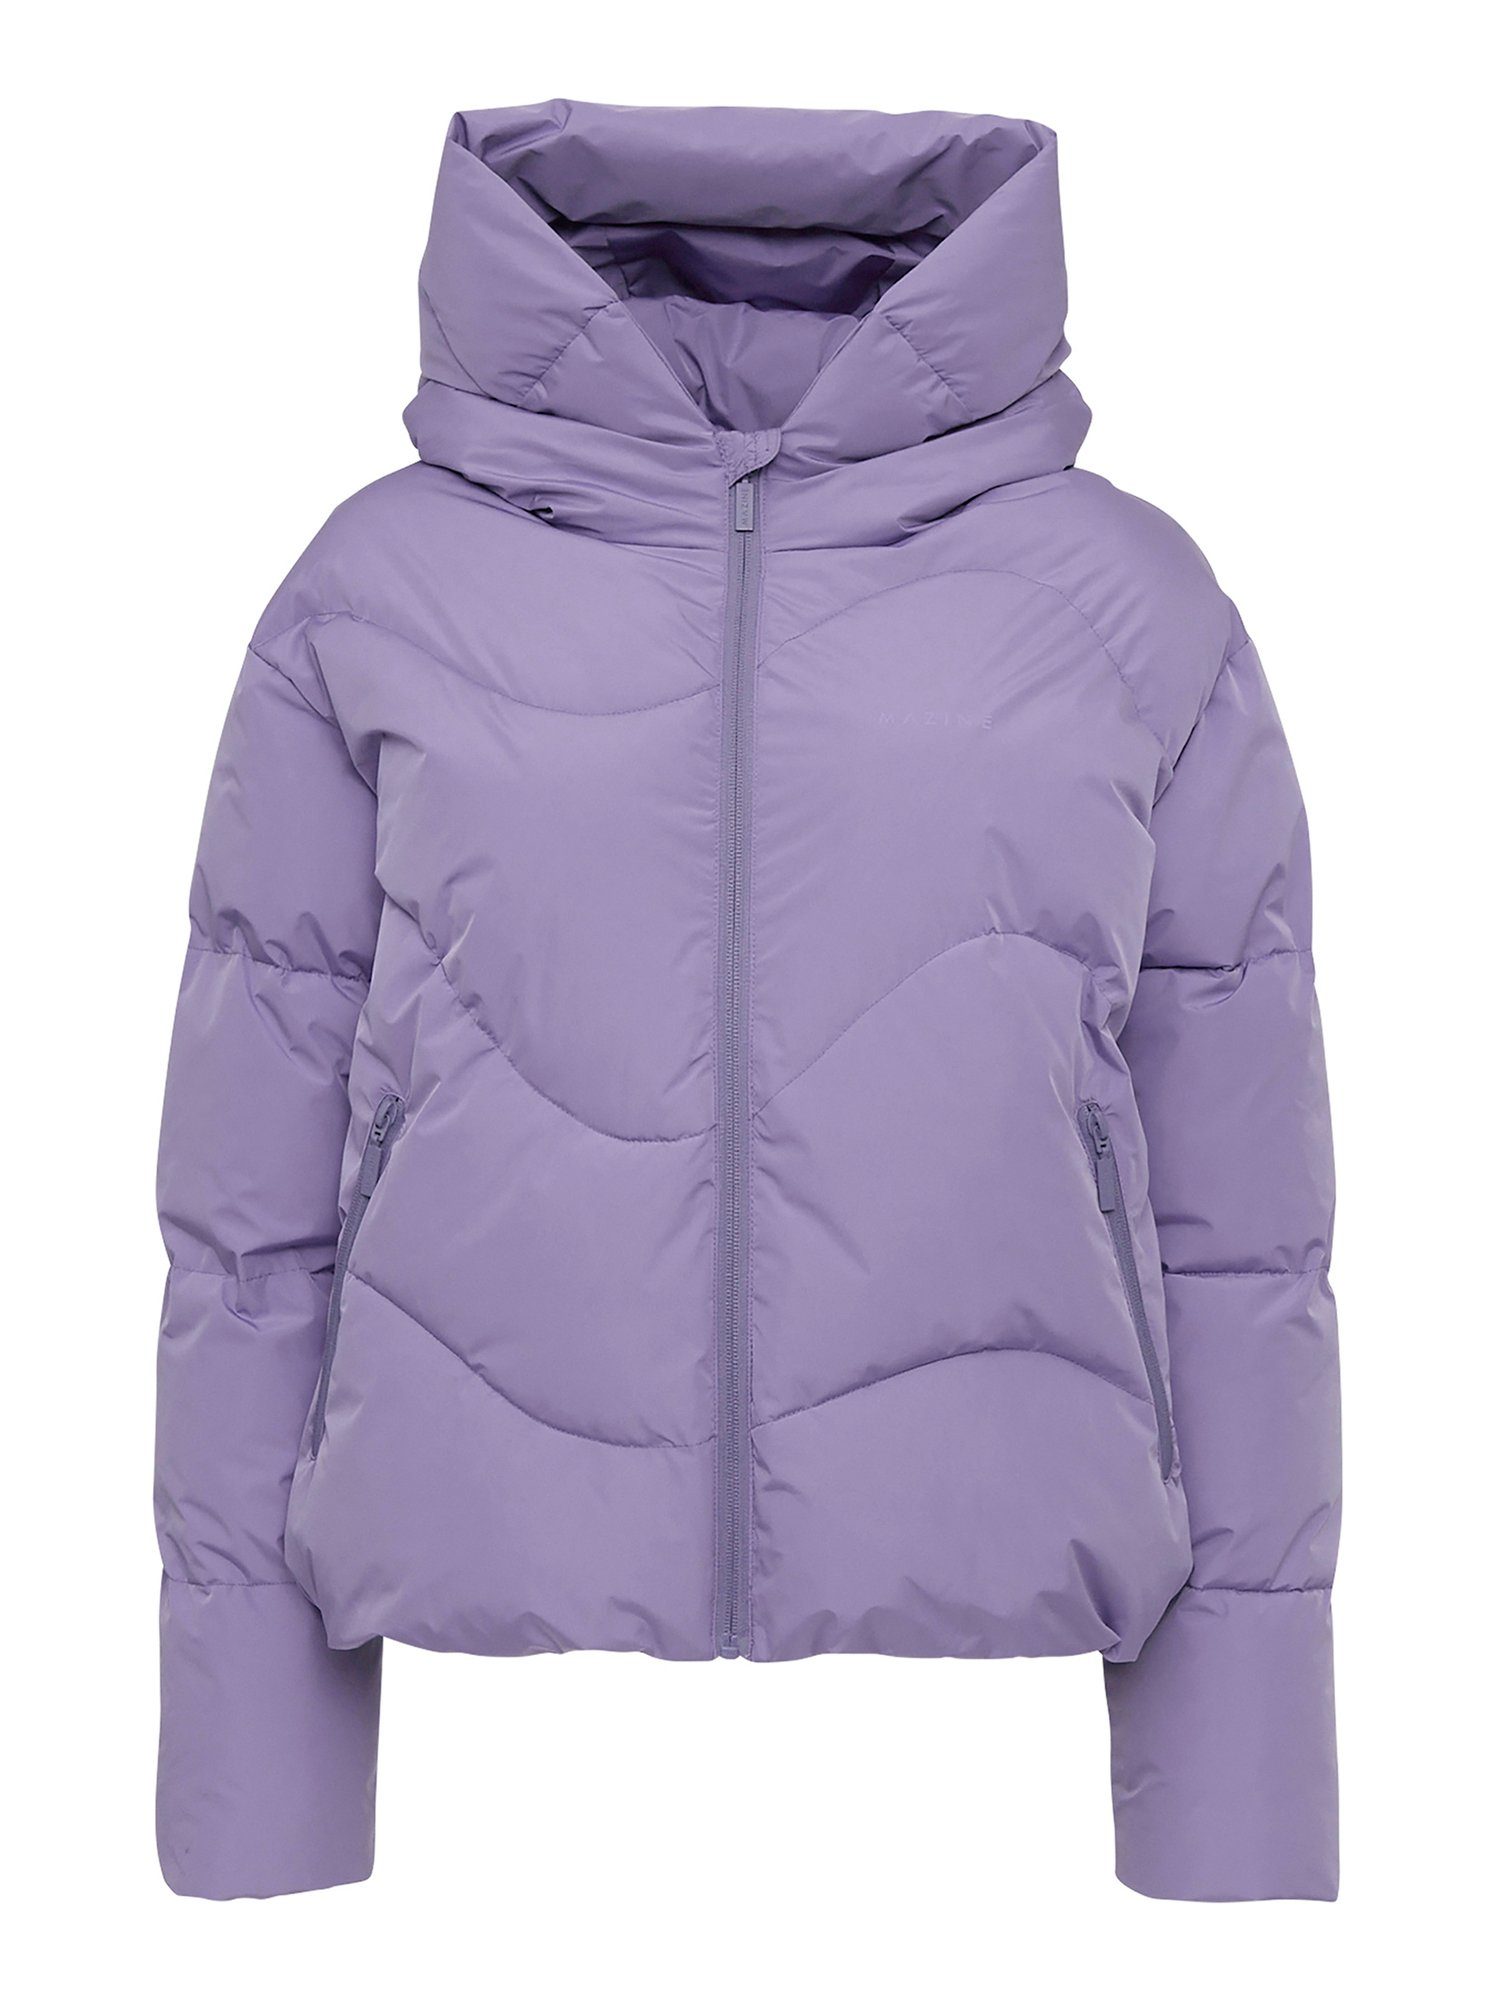 haze gefüttert purple Winterjacke MAZINE Puffer Jacket warm Dana